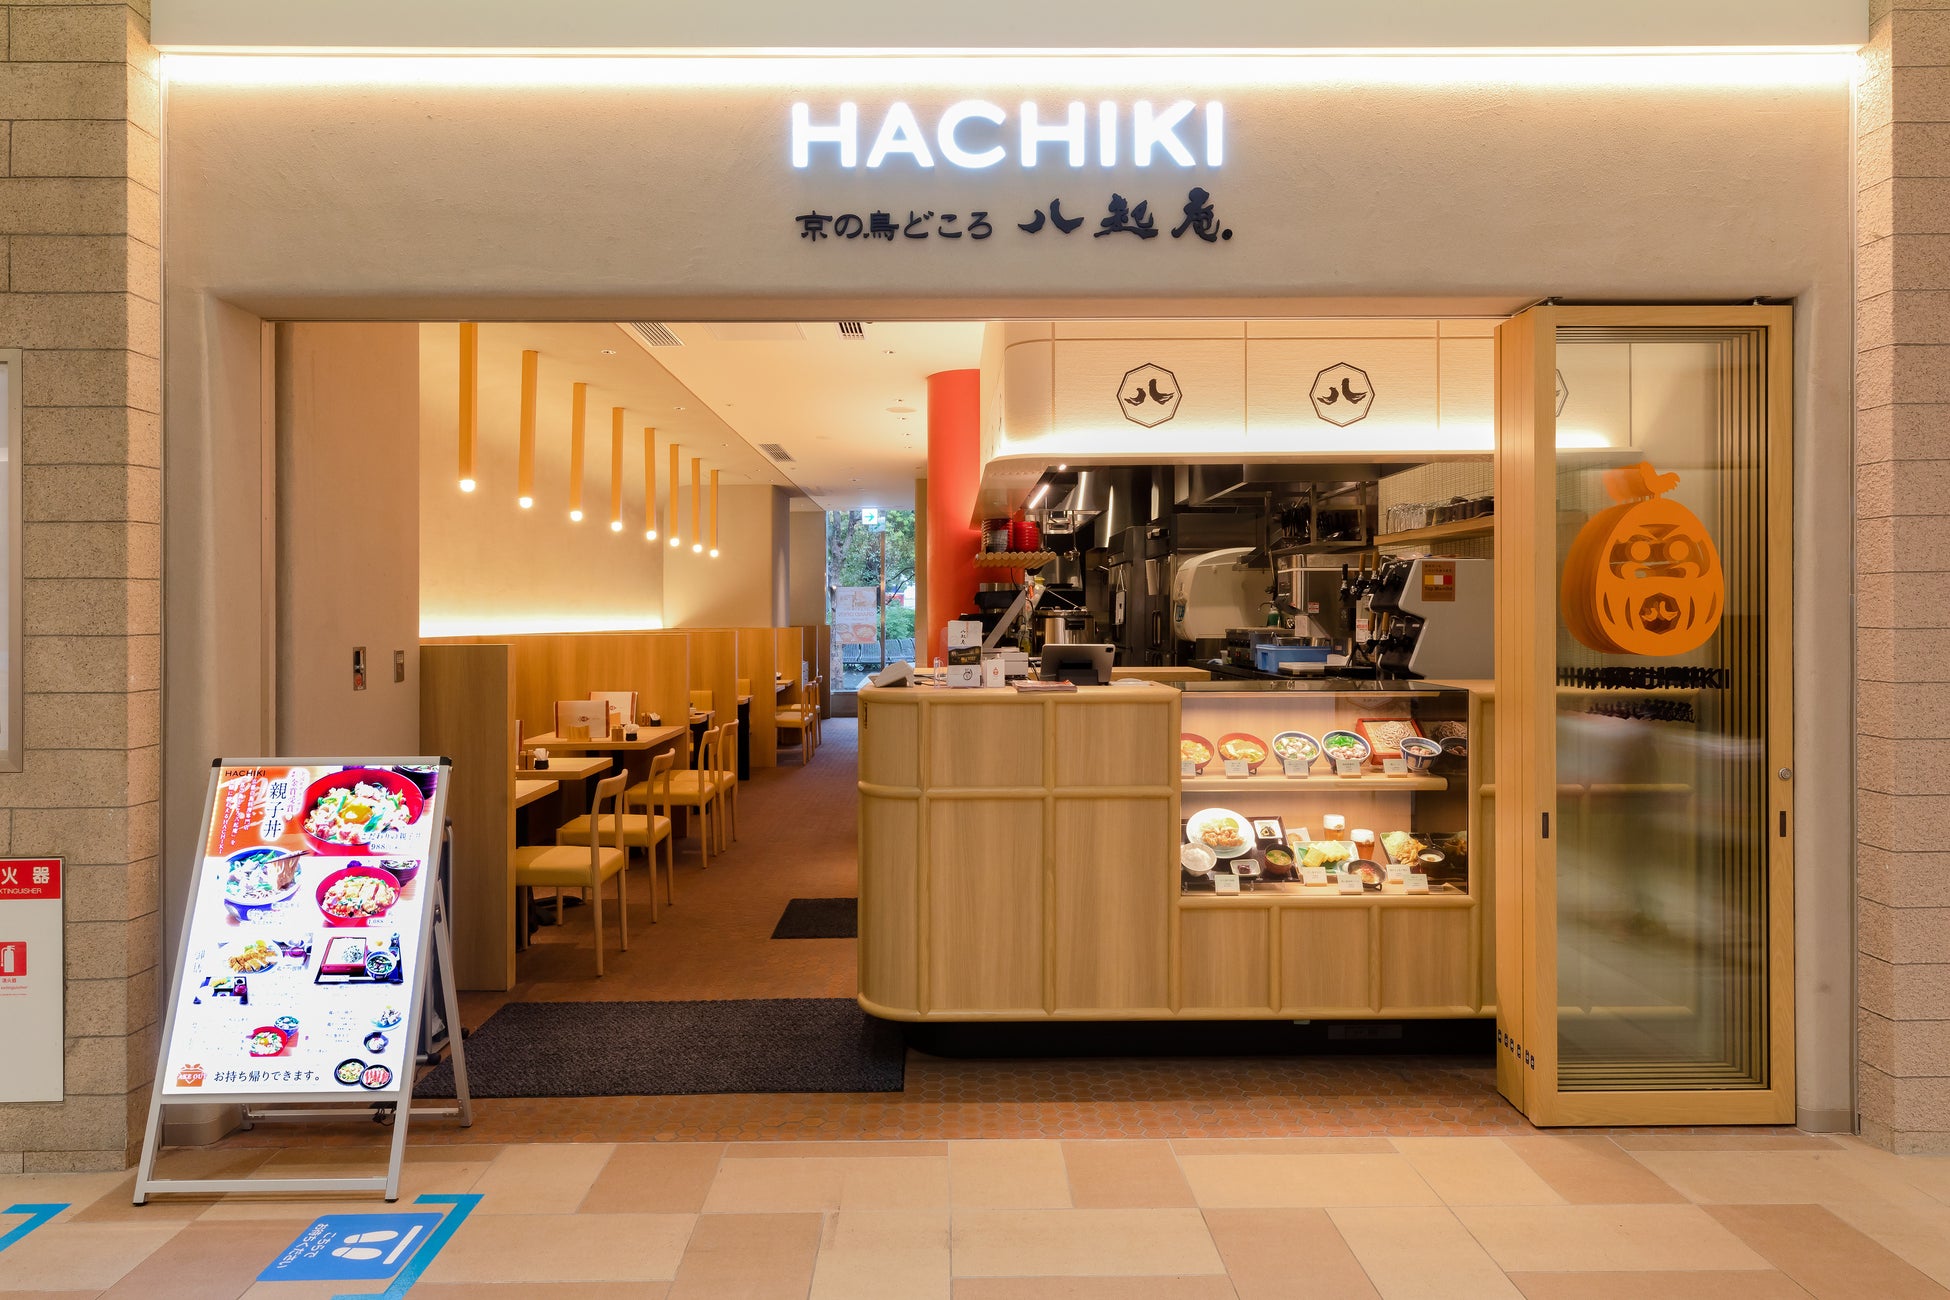 鳥料理専門店の老舗『京の鳥どころ八起庵』が新横浜駅内キュービックプラザにオープンしました